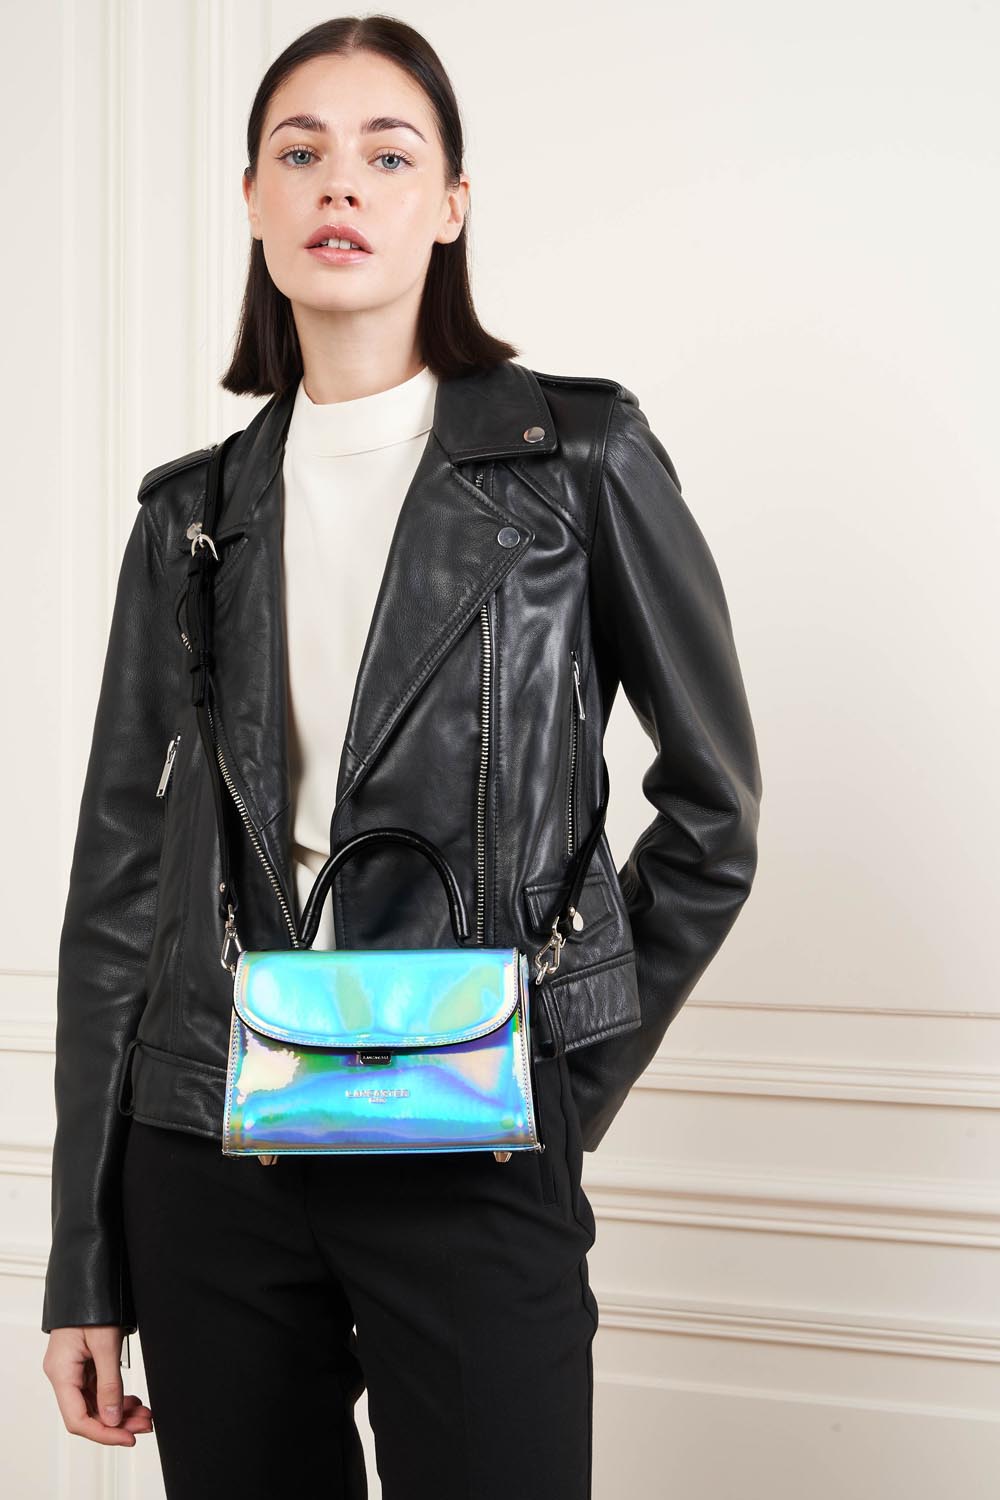 handbag - glass irio #couleur_argent